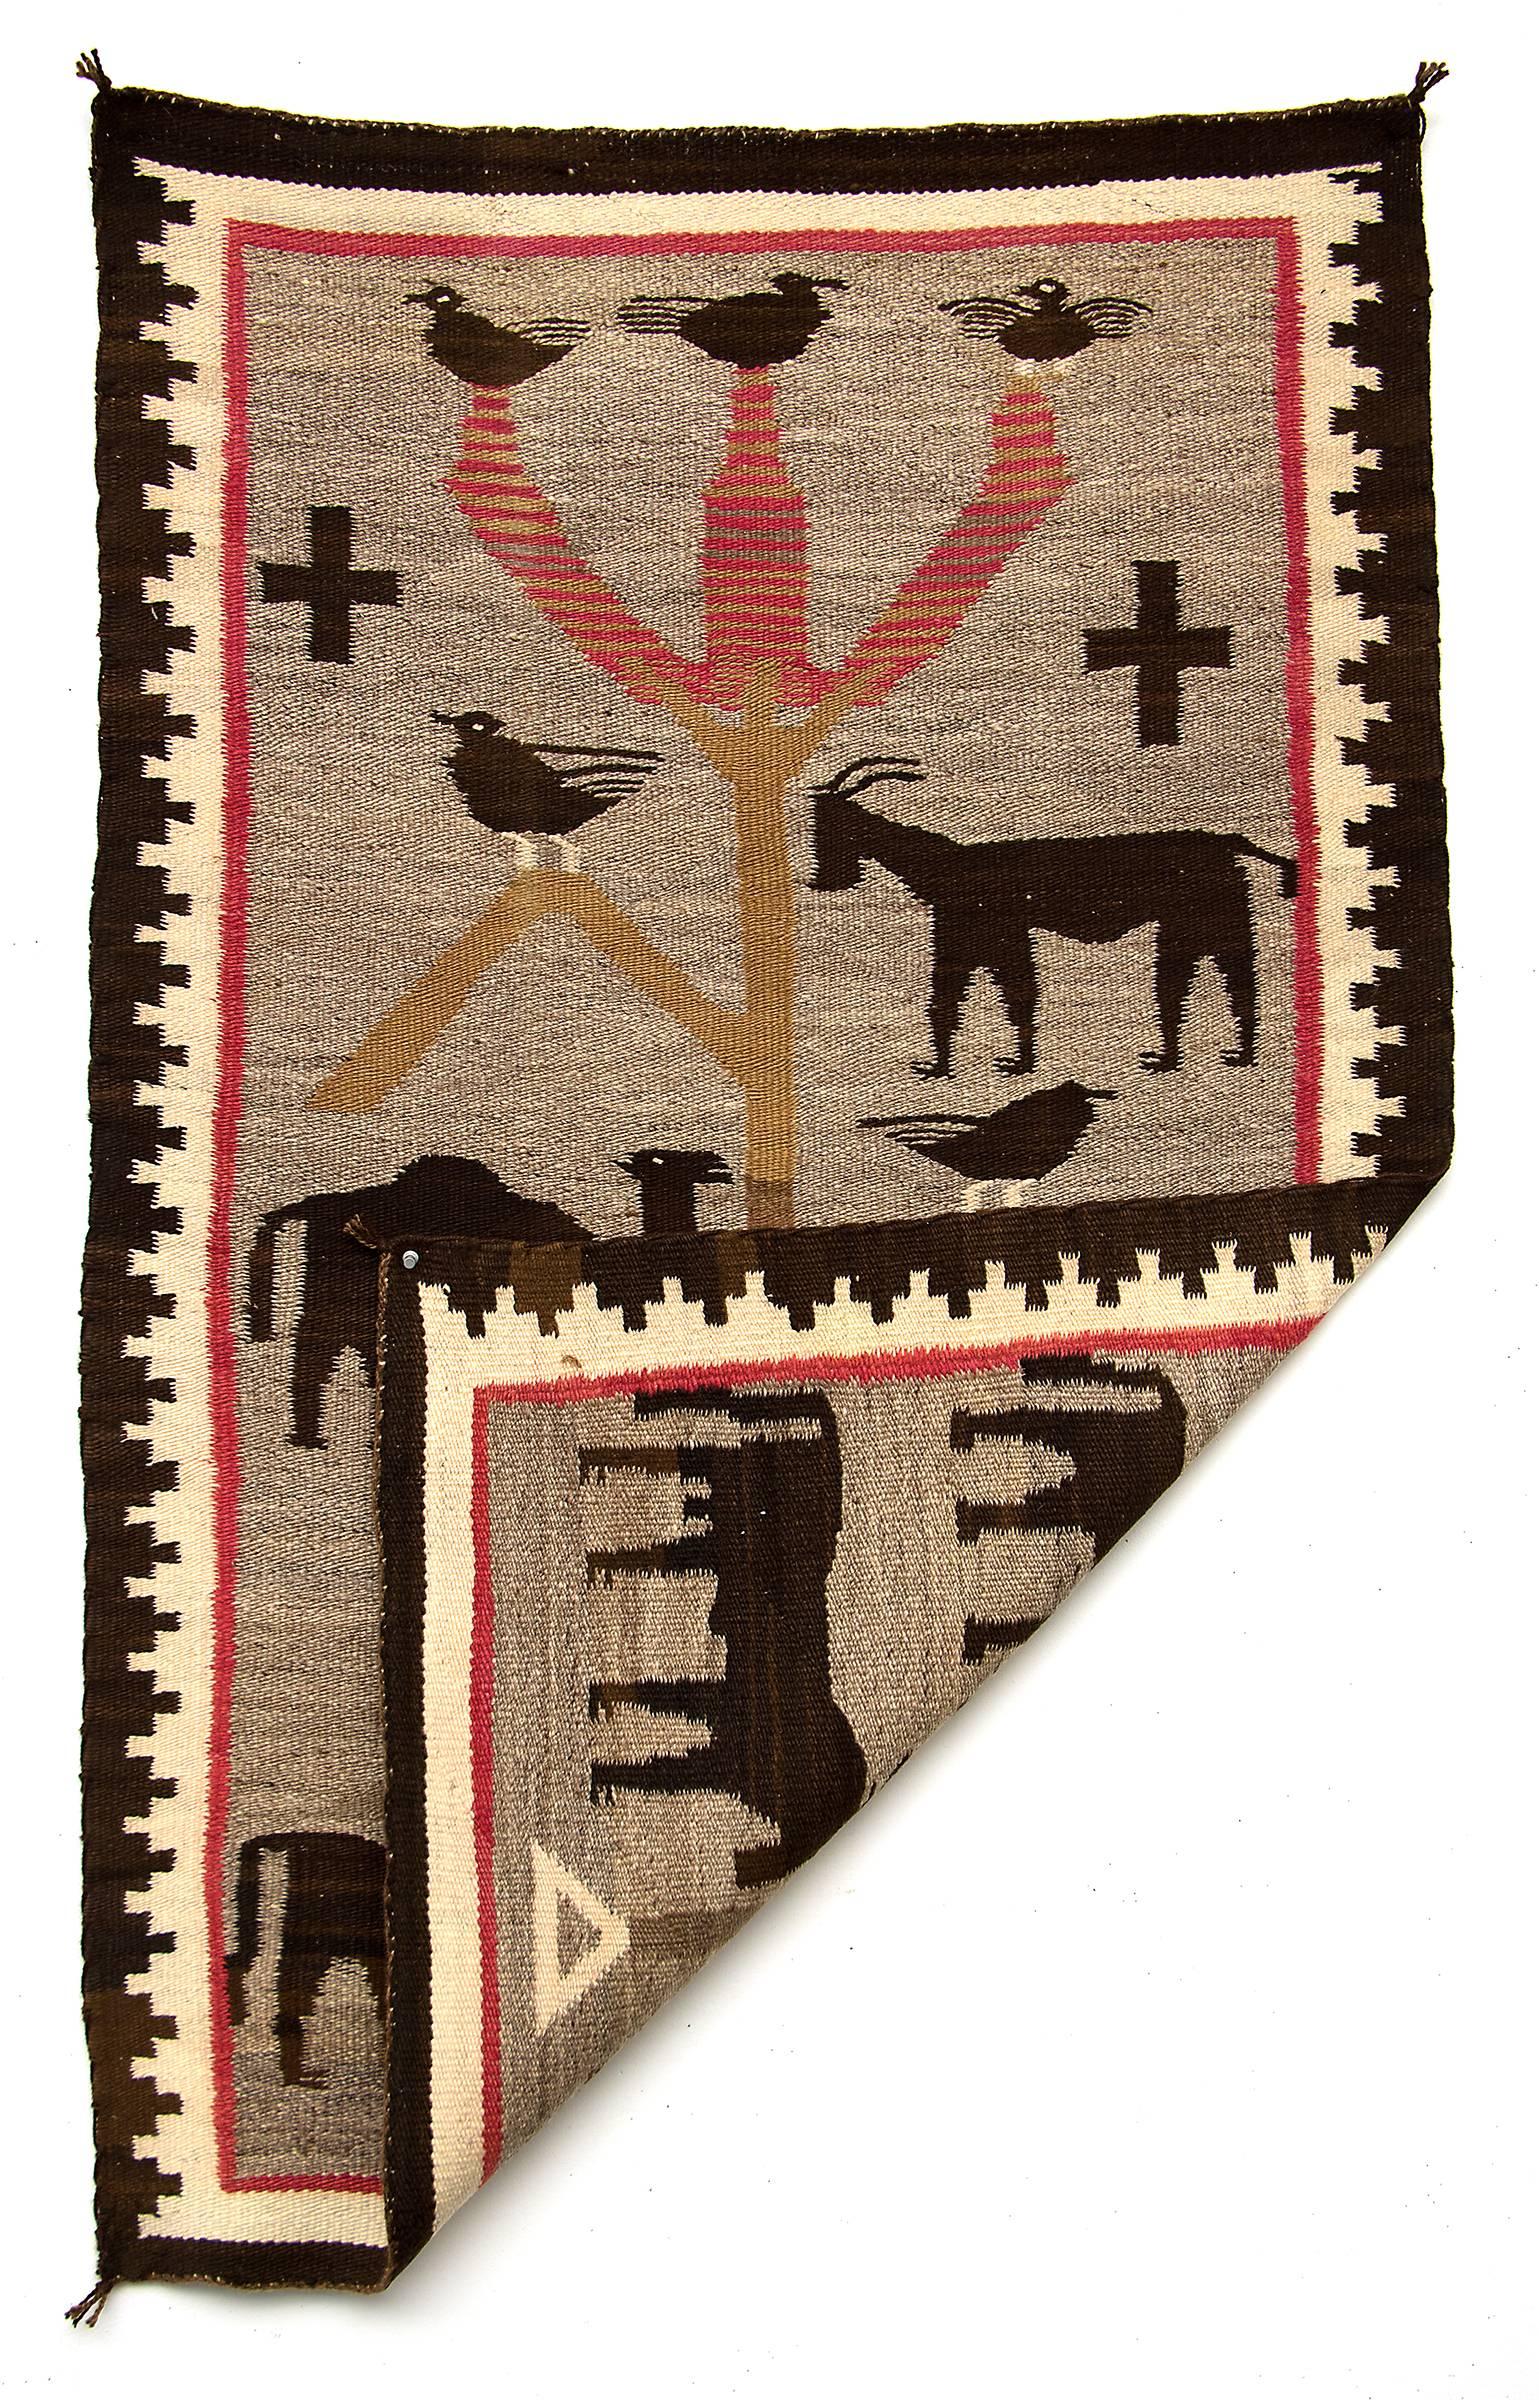 Circa 1900 Navajo pictorial textile/weaving. The 